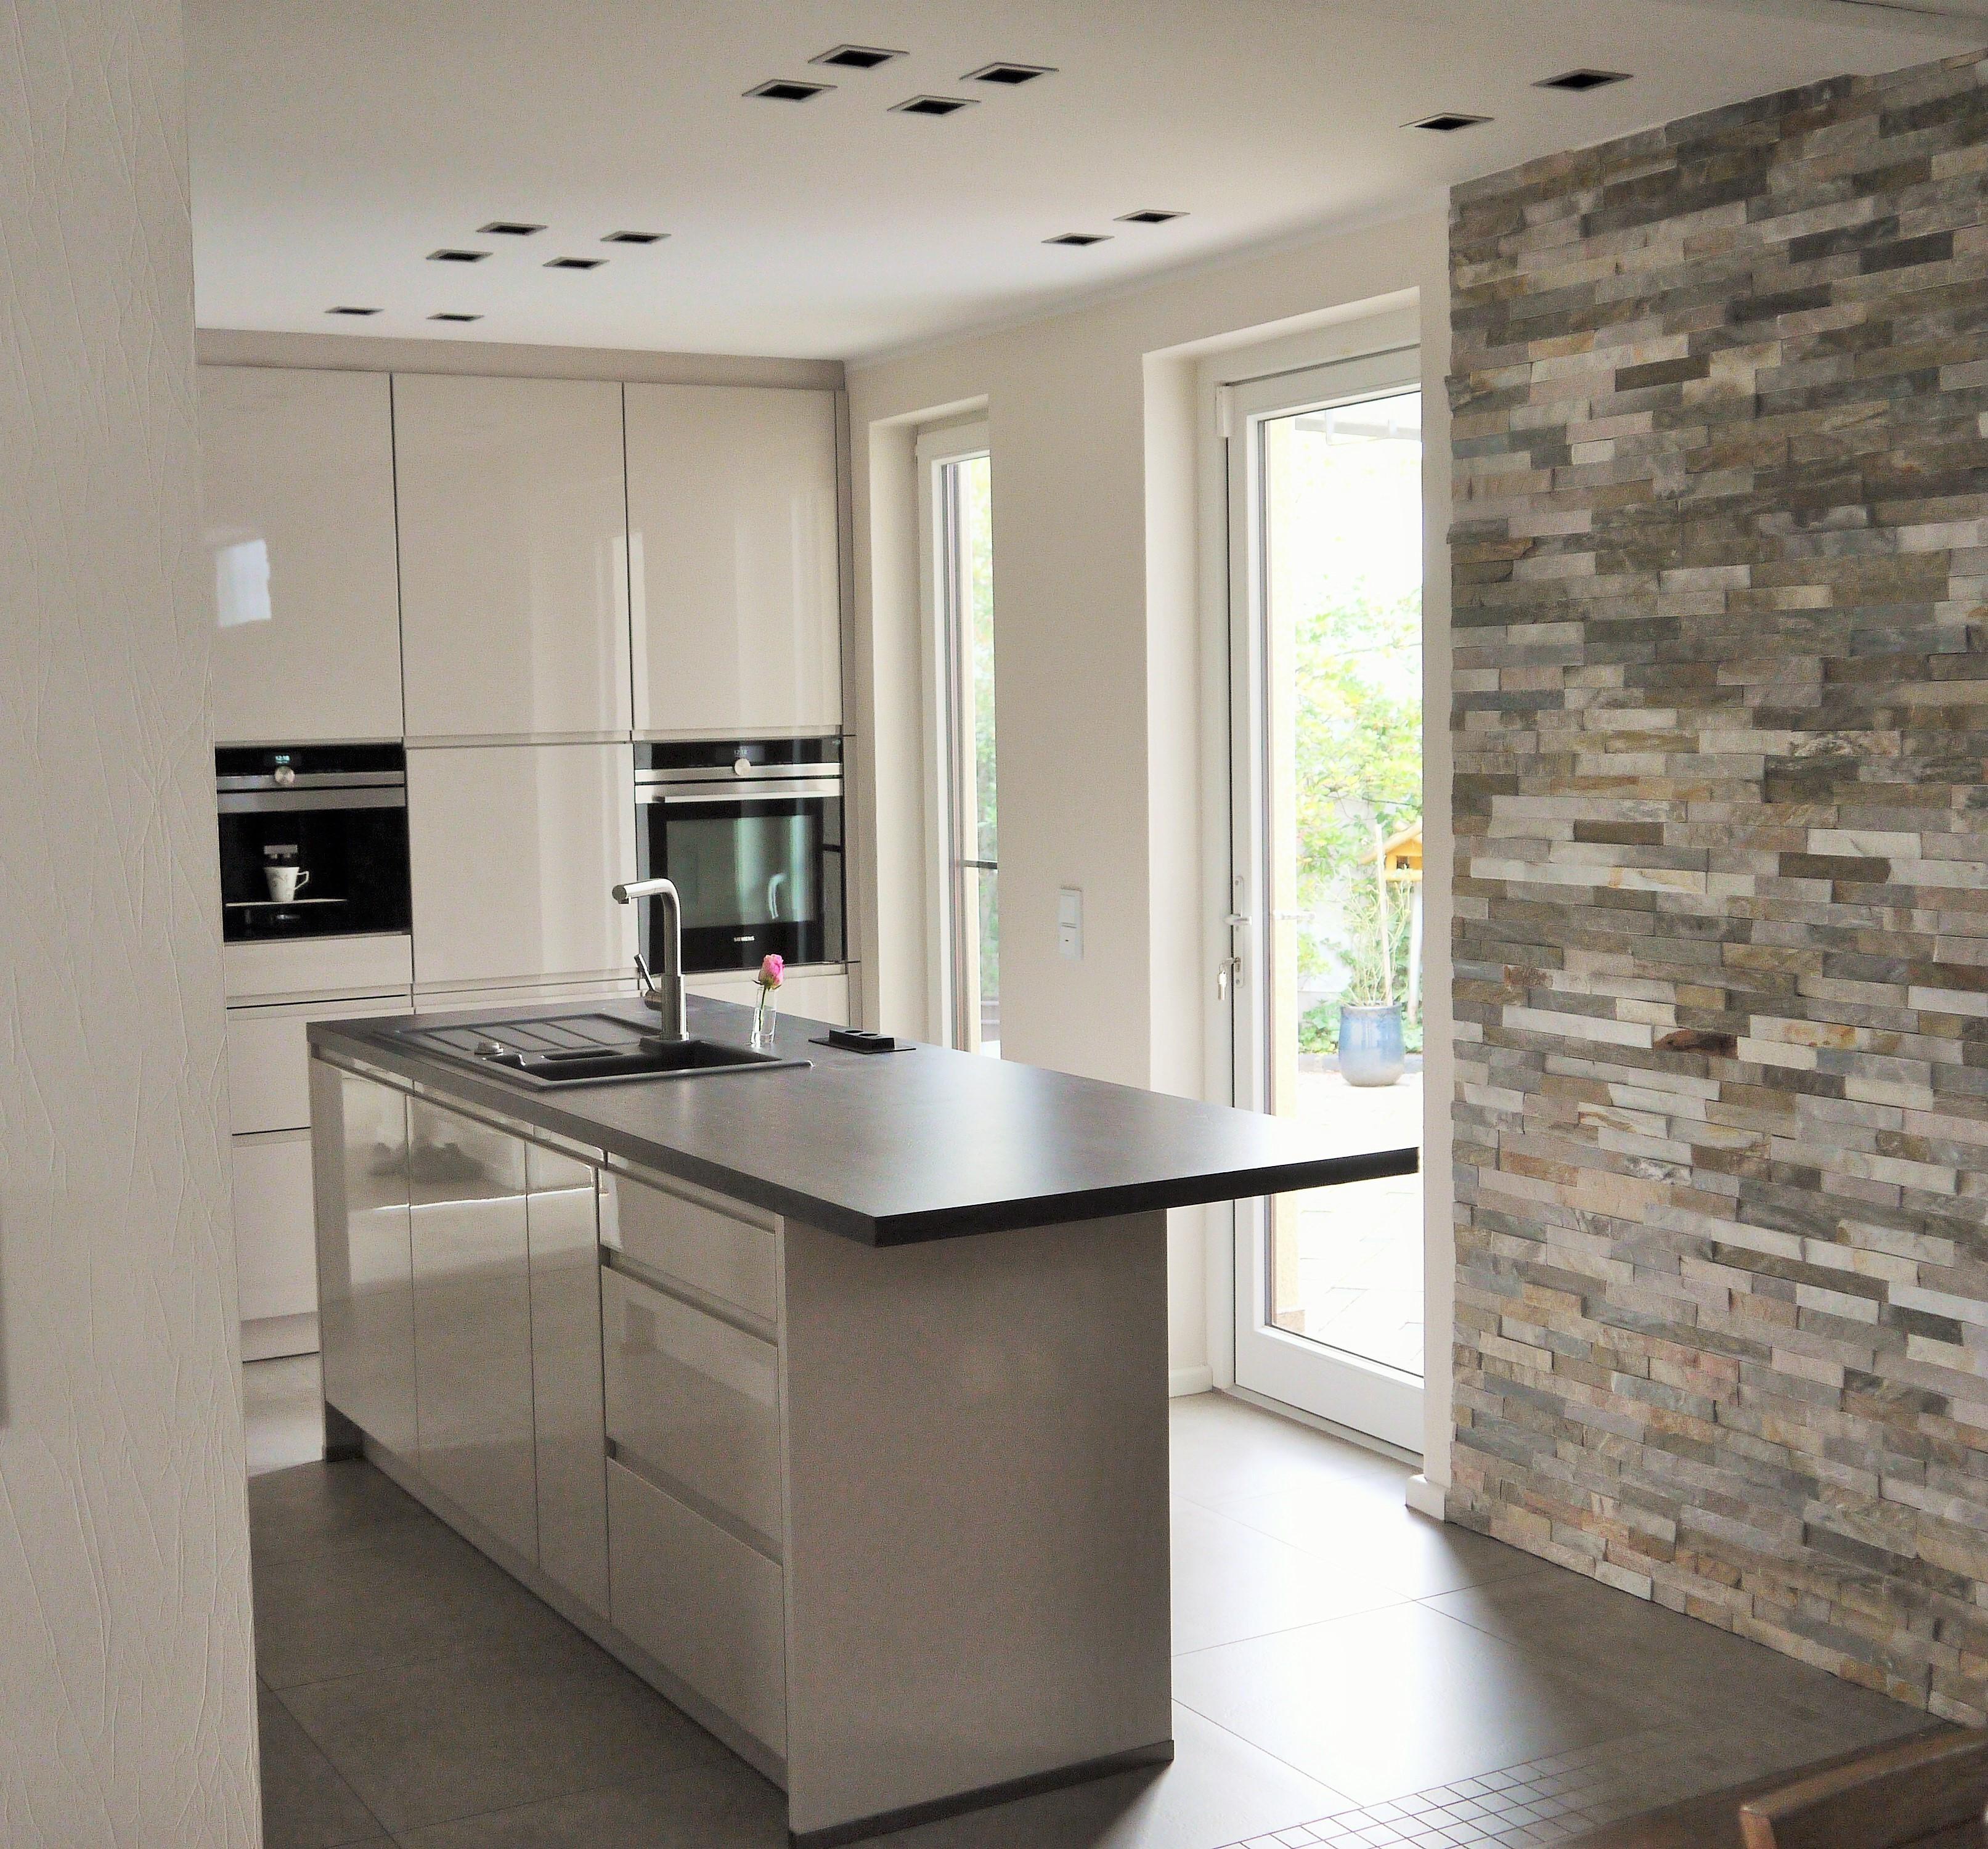 Küche 2 #küche #natursteinwand #einrichtungsberatung #innenarchitektur #saniertealtbauküche ©Flohs Wohnraumkonzepte